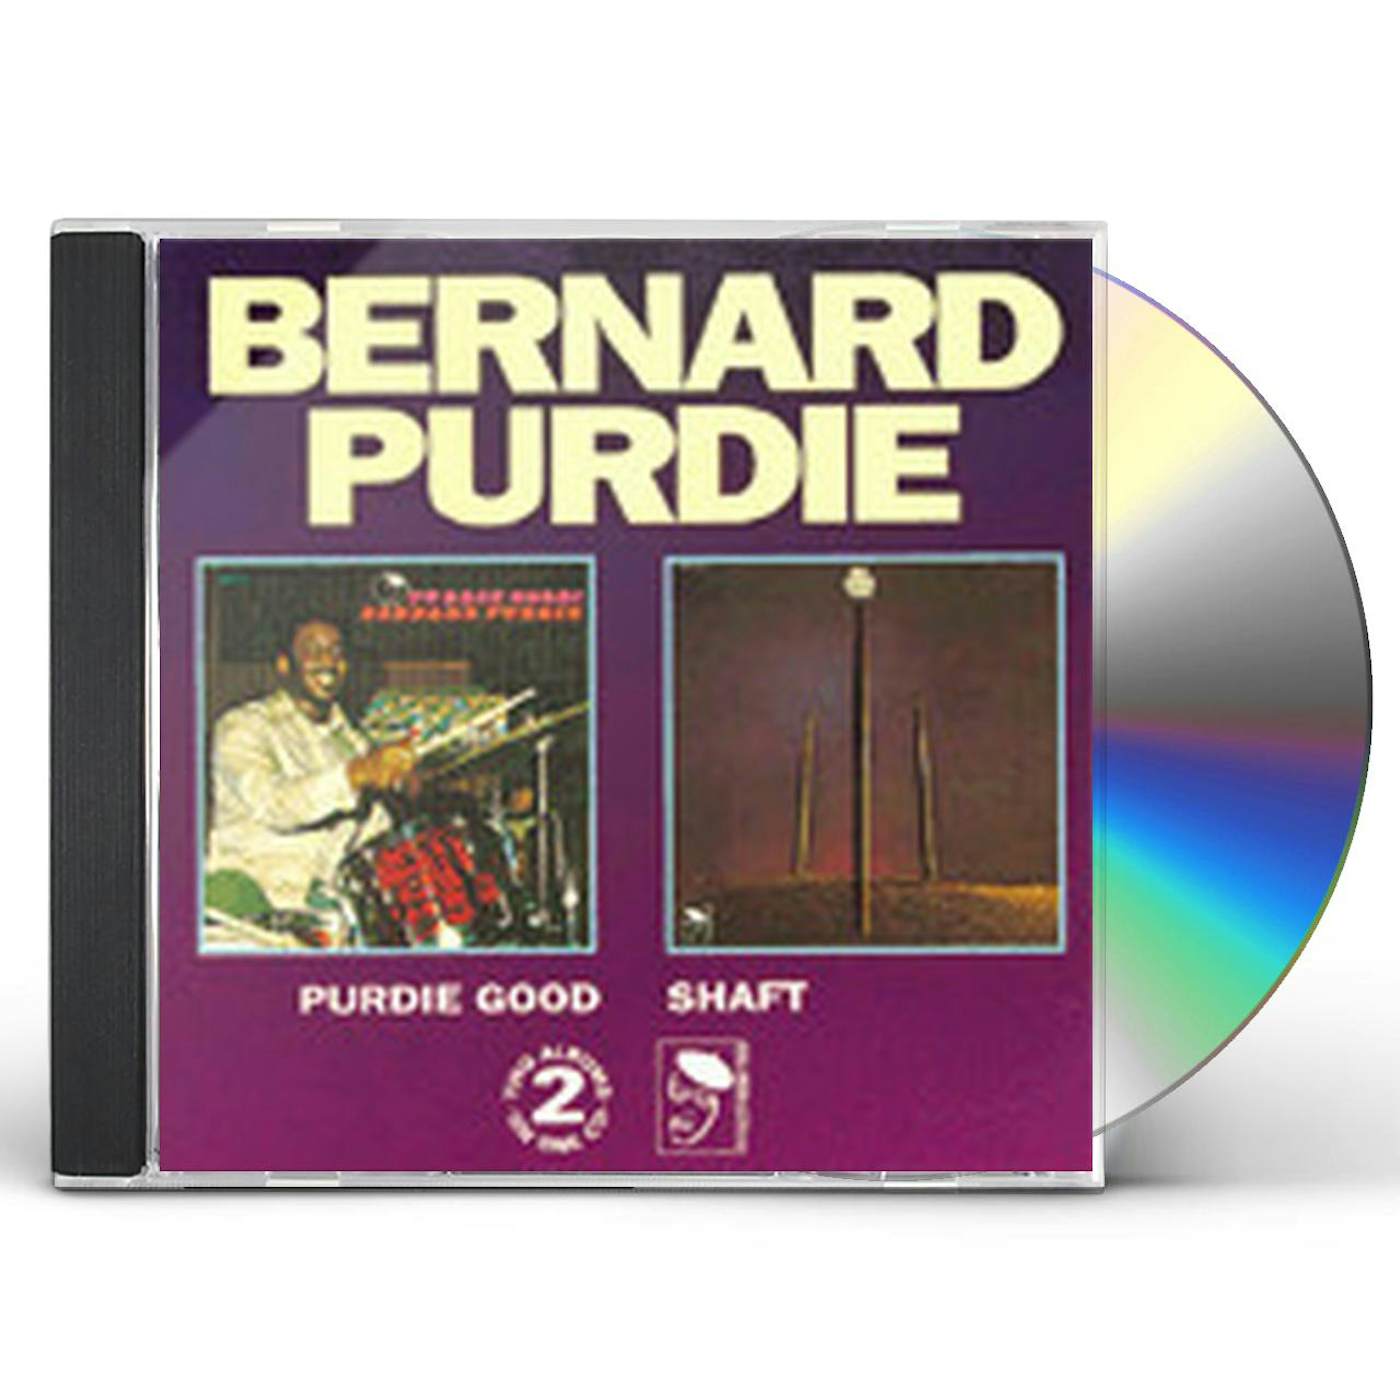 Bernard Purdie PURDIE GOOD/SHAFT CD